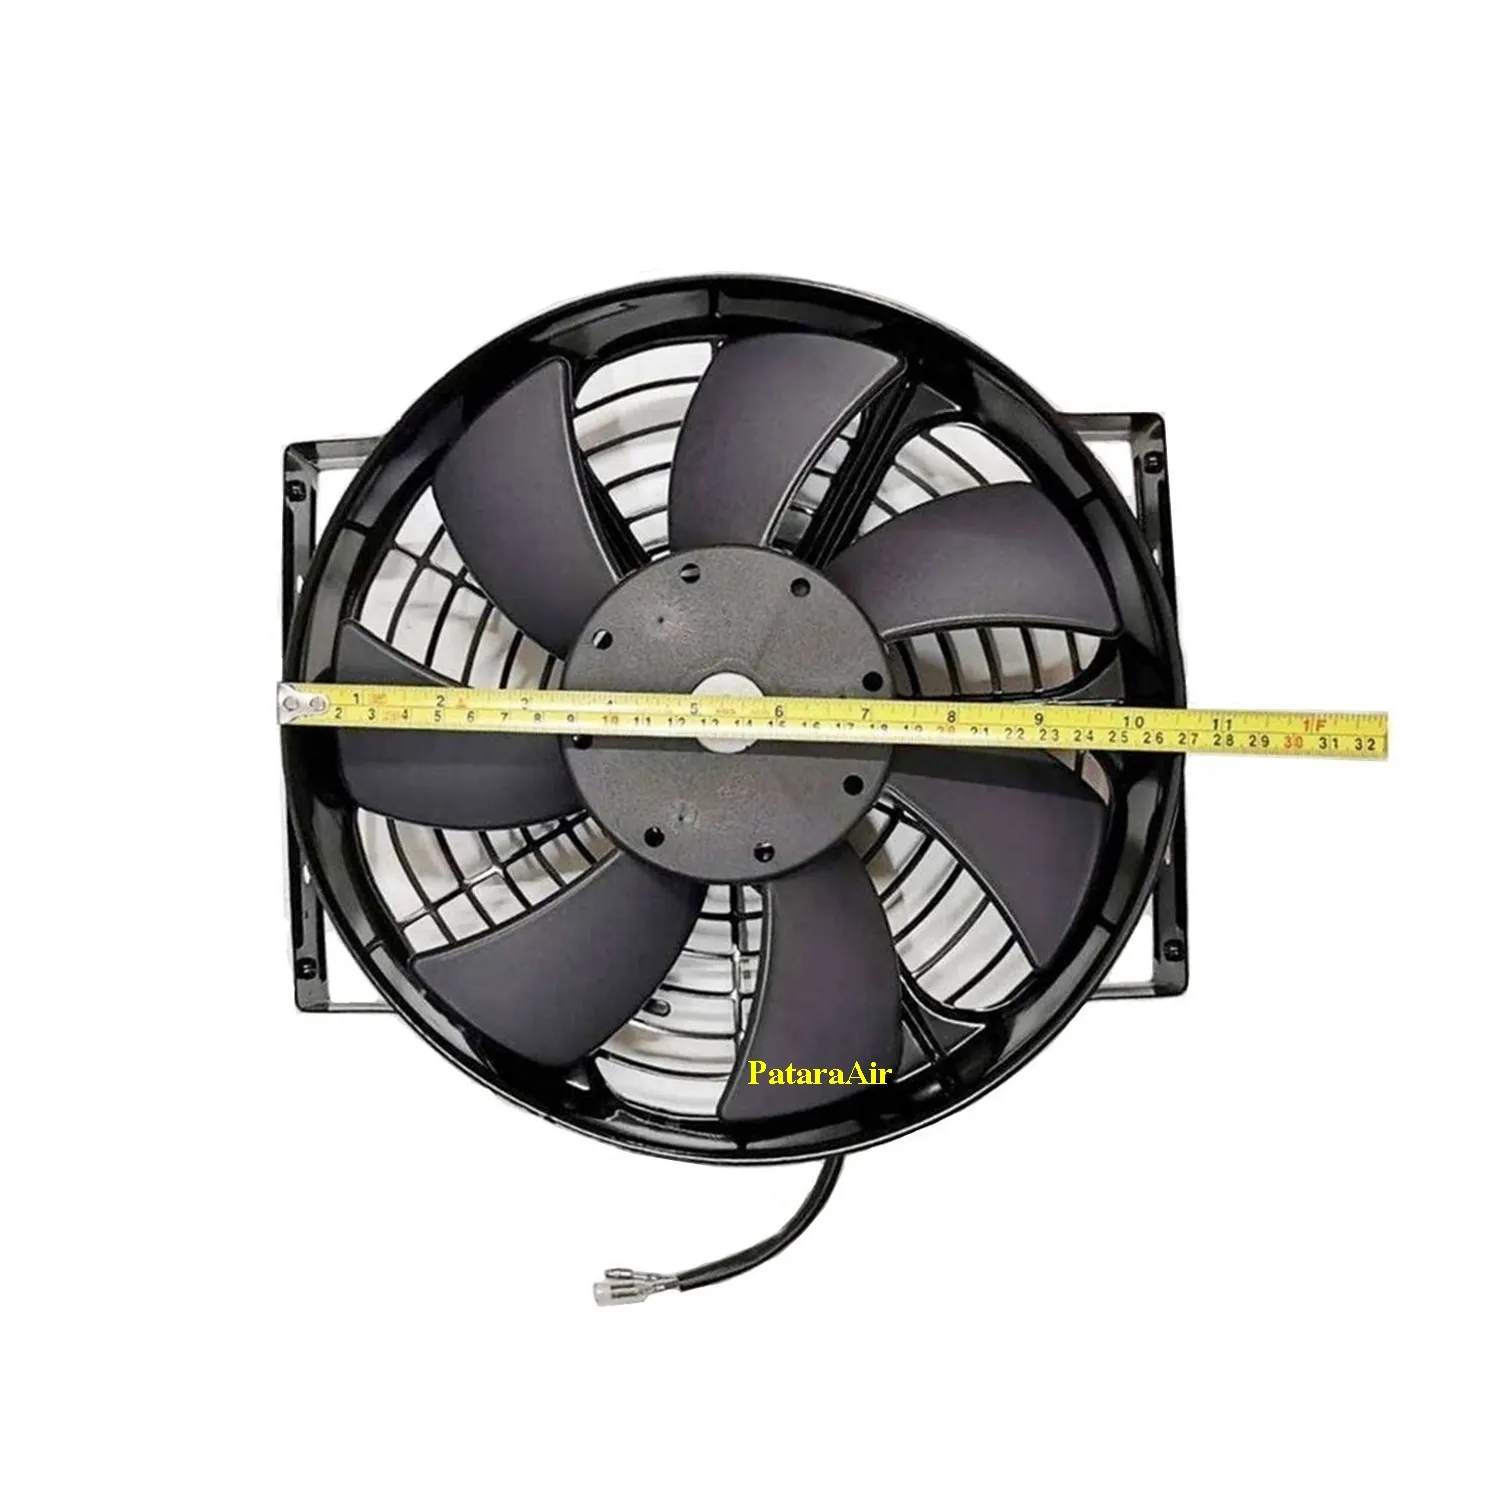 พัดลม ระบายความร้อน 10 นิ้ว (หนา) 12V. โครงเหล็ก พัดลมแอร์ พัดลมไฟฟ้า พัดลมหม้อน้ำ